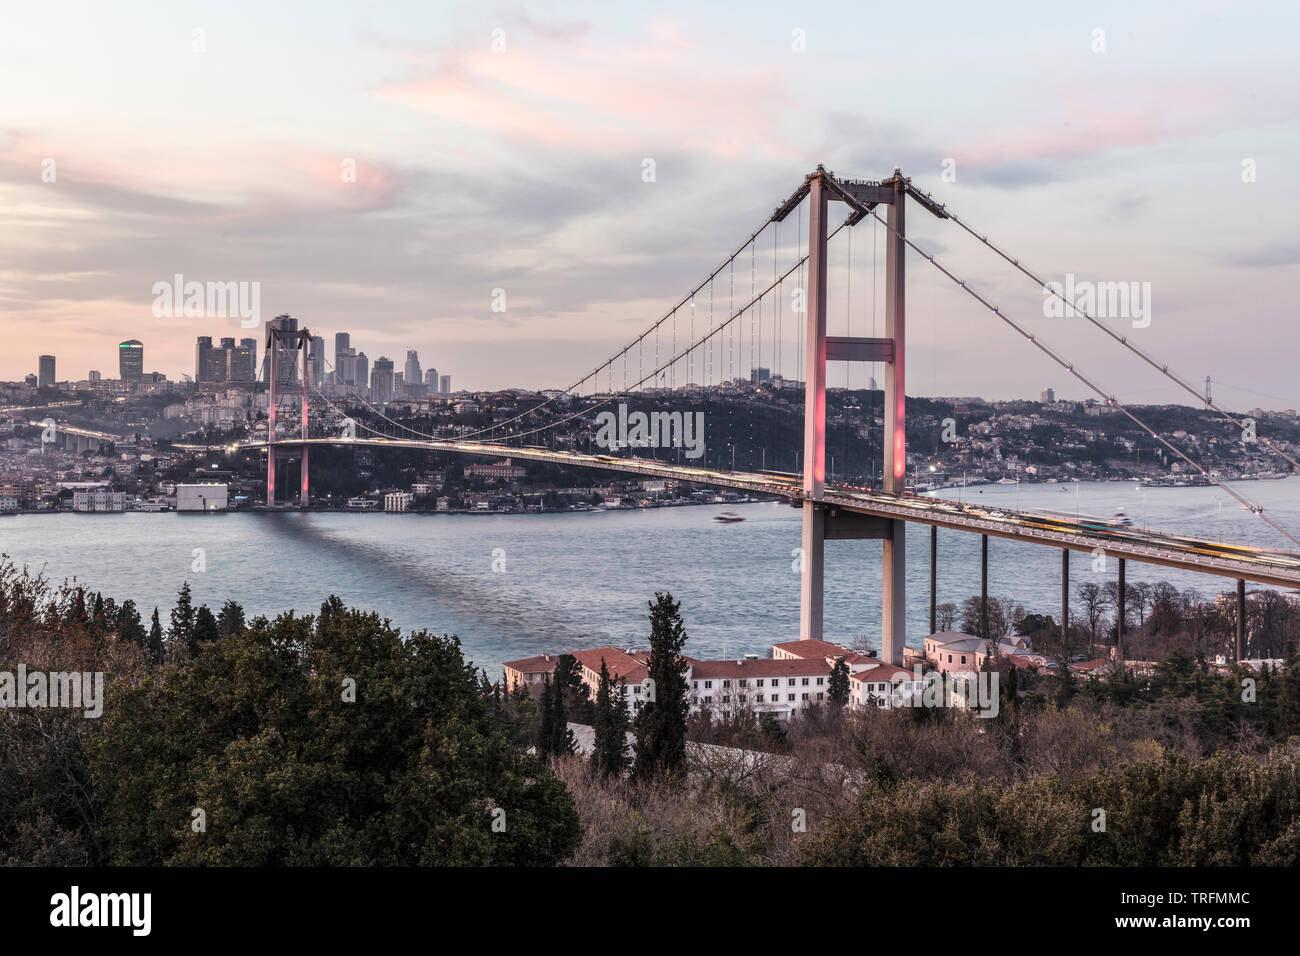 Bosporus-Brücke in Istanbul Türkei - zwischen Asien und Europa Stockfoto